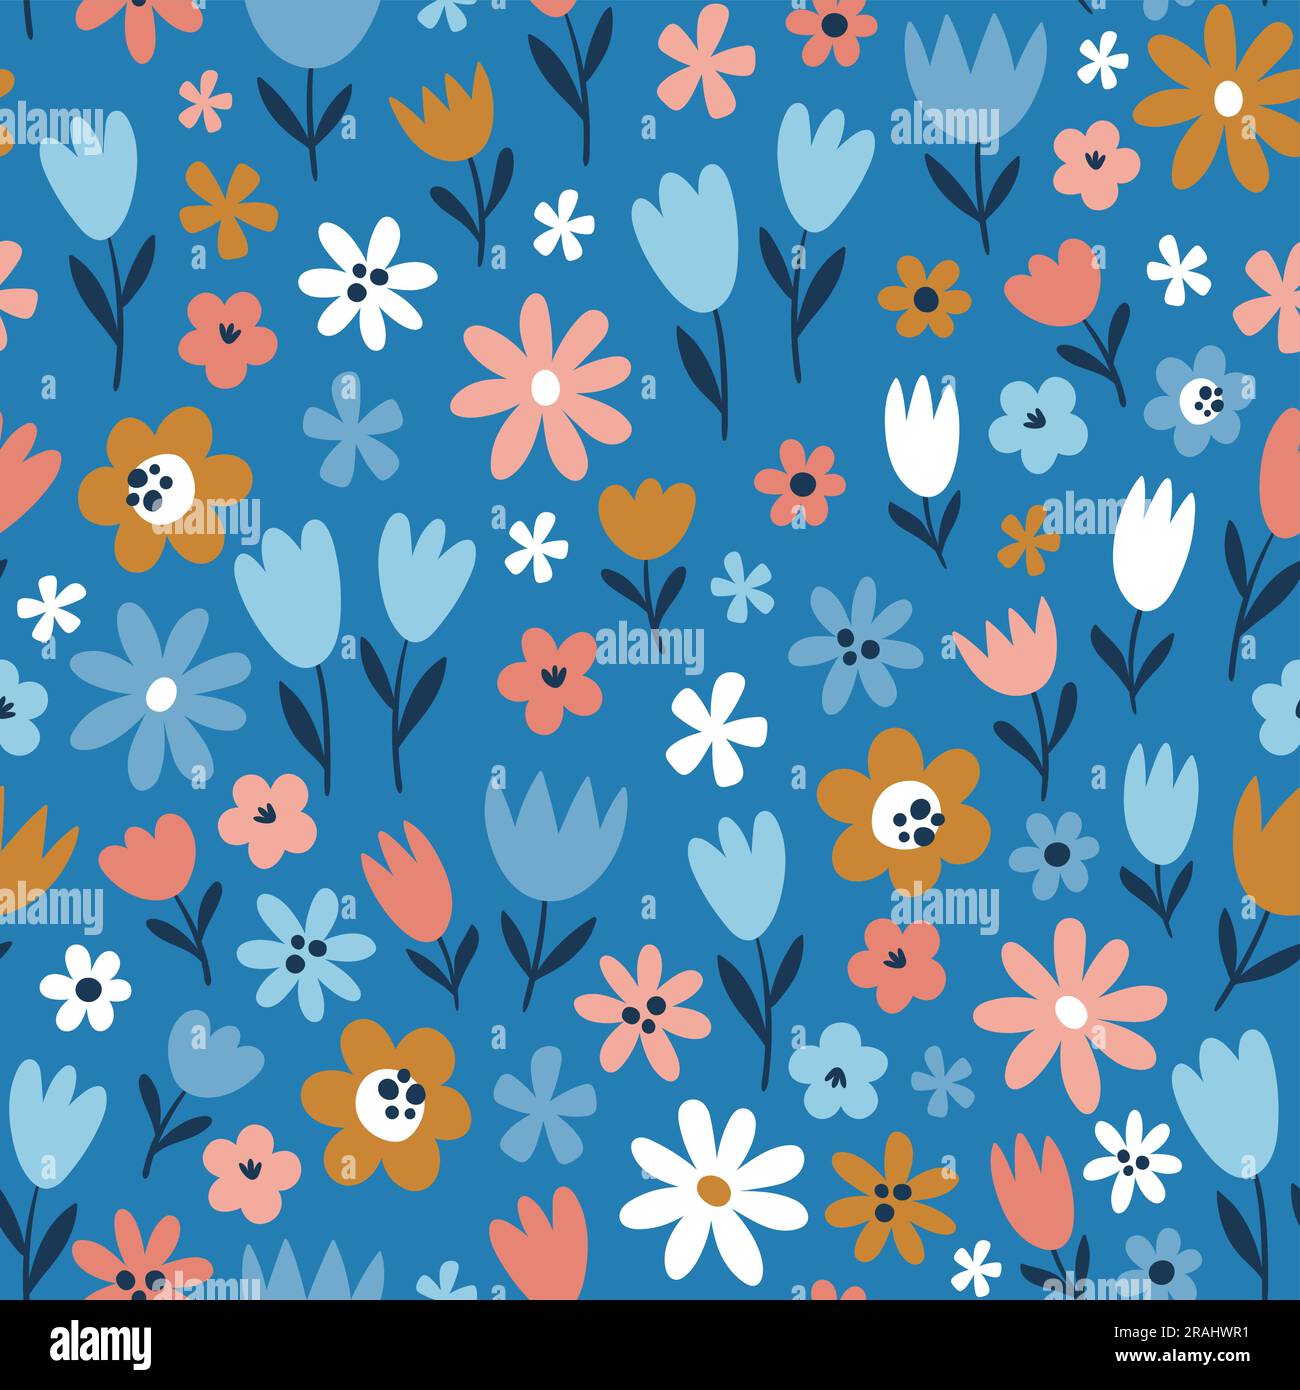 Nahtloses Blumenmuster auf blauem Hintergrund. Wiederhole das Muster mit kleinen abstrakten Blumen. Quadratisches Design. Vektordarstellung. Stock Vektor